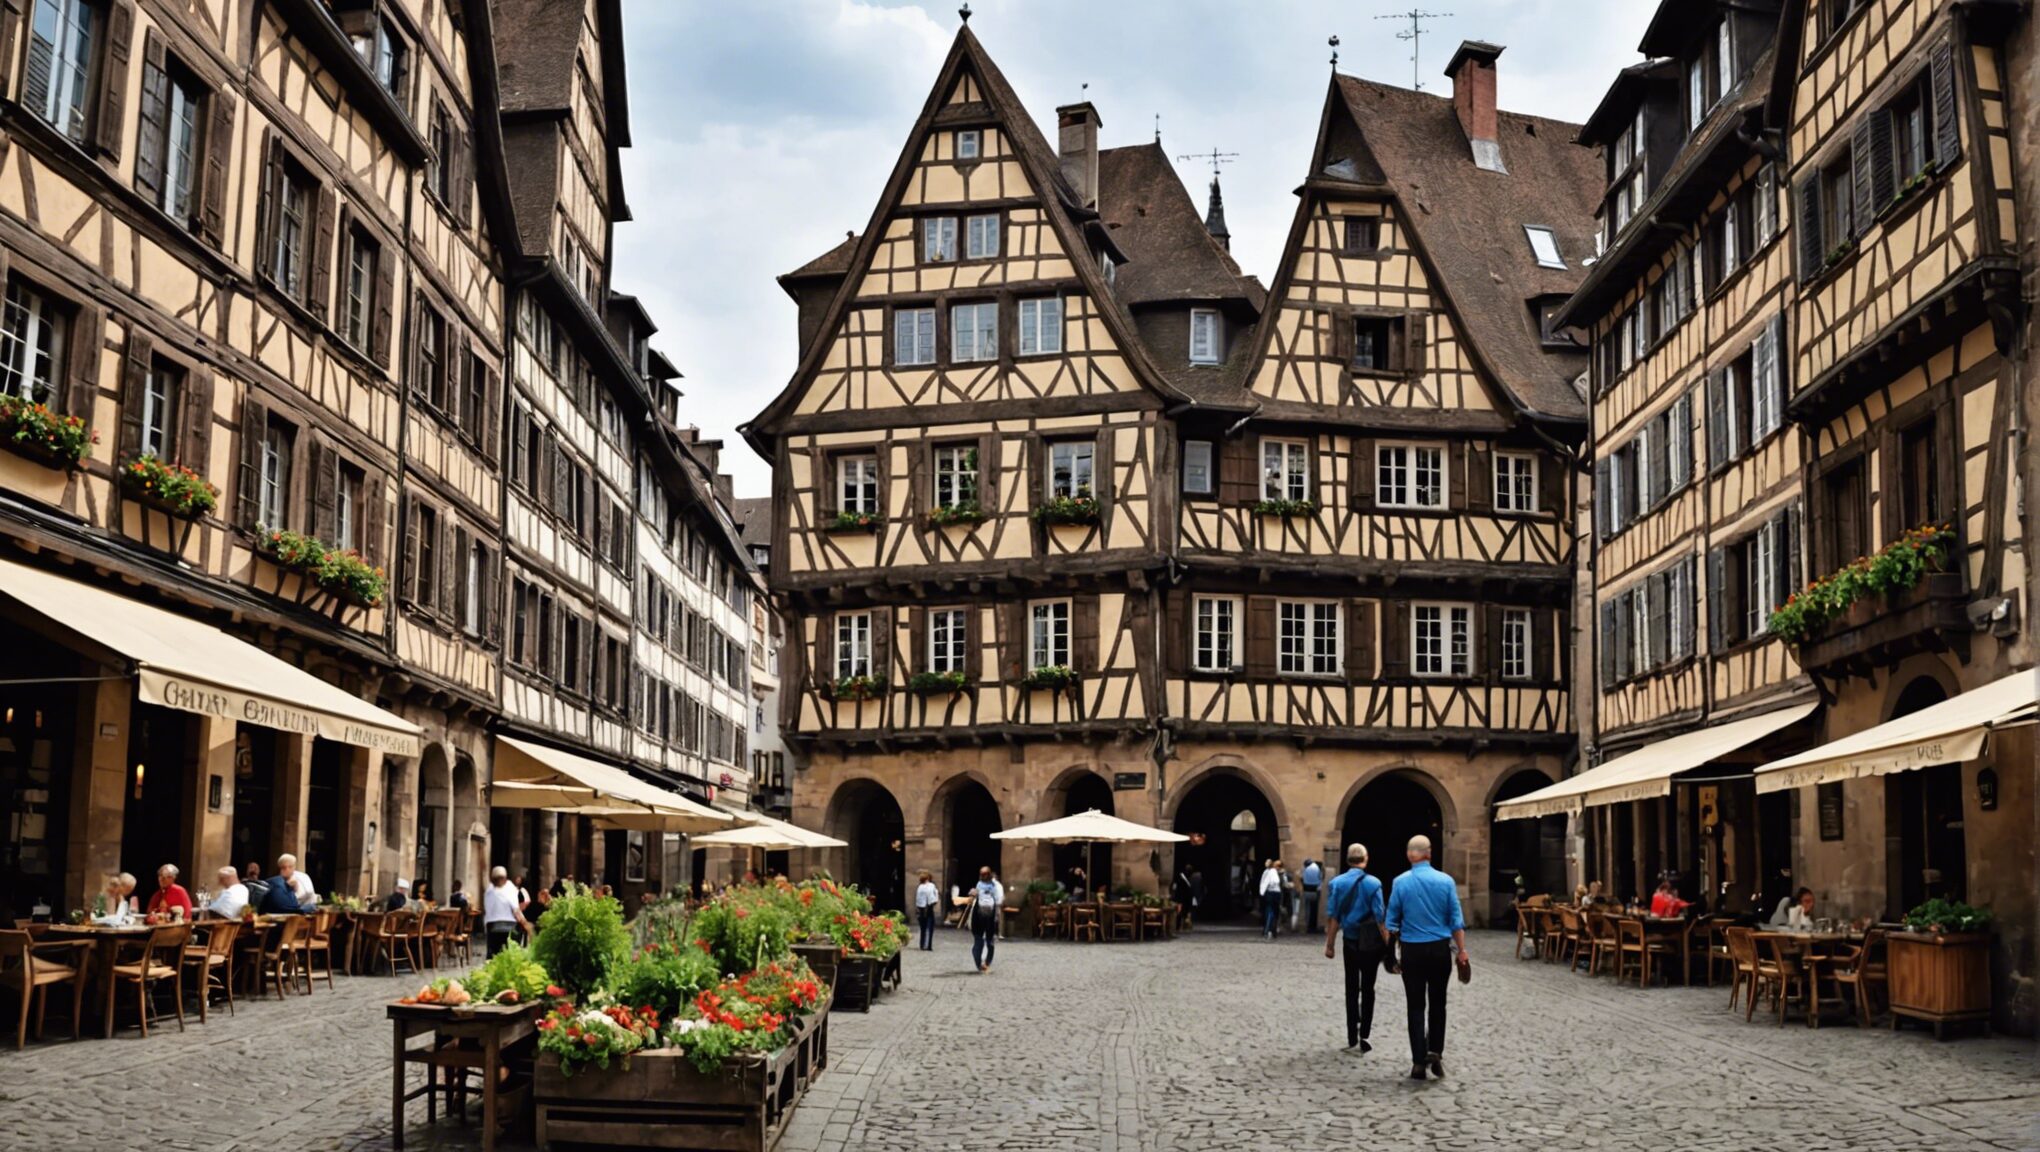 découvrez les charmes, l'histoire et la gastronomie de strasbourg lors d'un week-end d'exploration inoubliable.